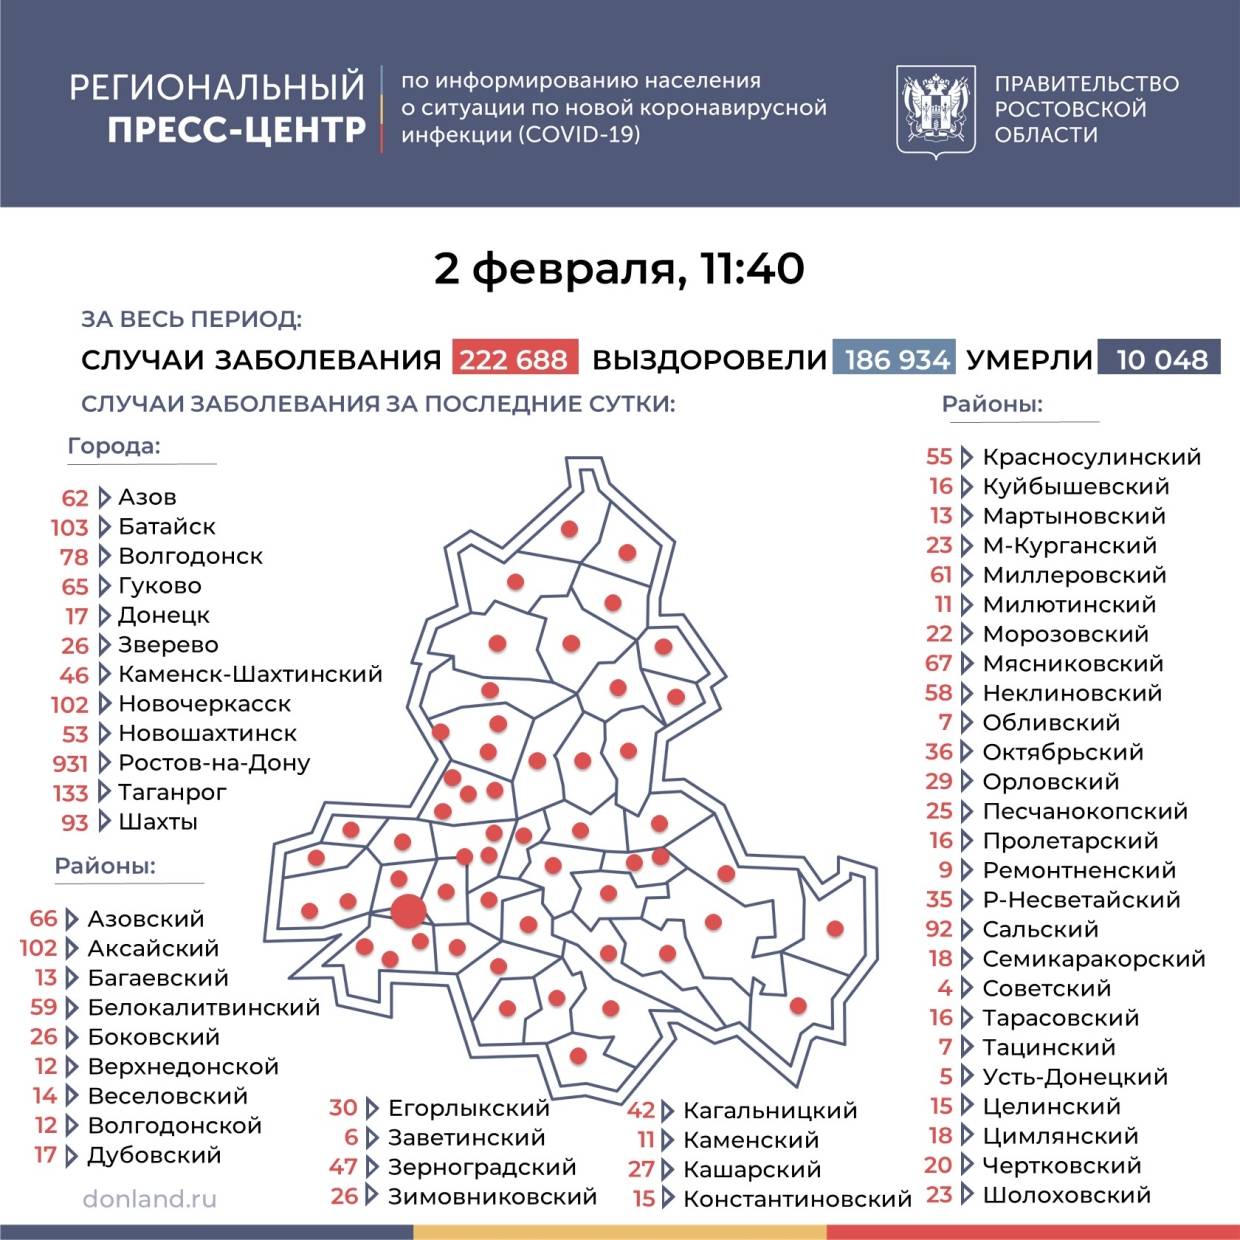 Дистанционные больничные и удаленка, как Ростовская область противостоит «Омикрону»